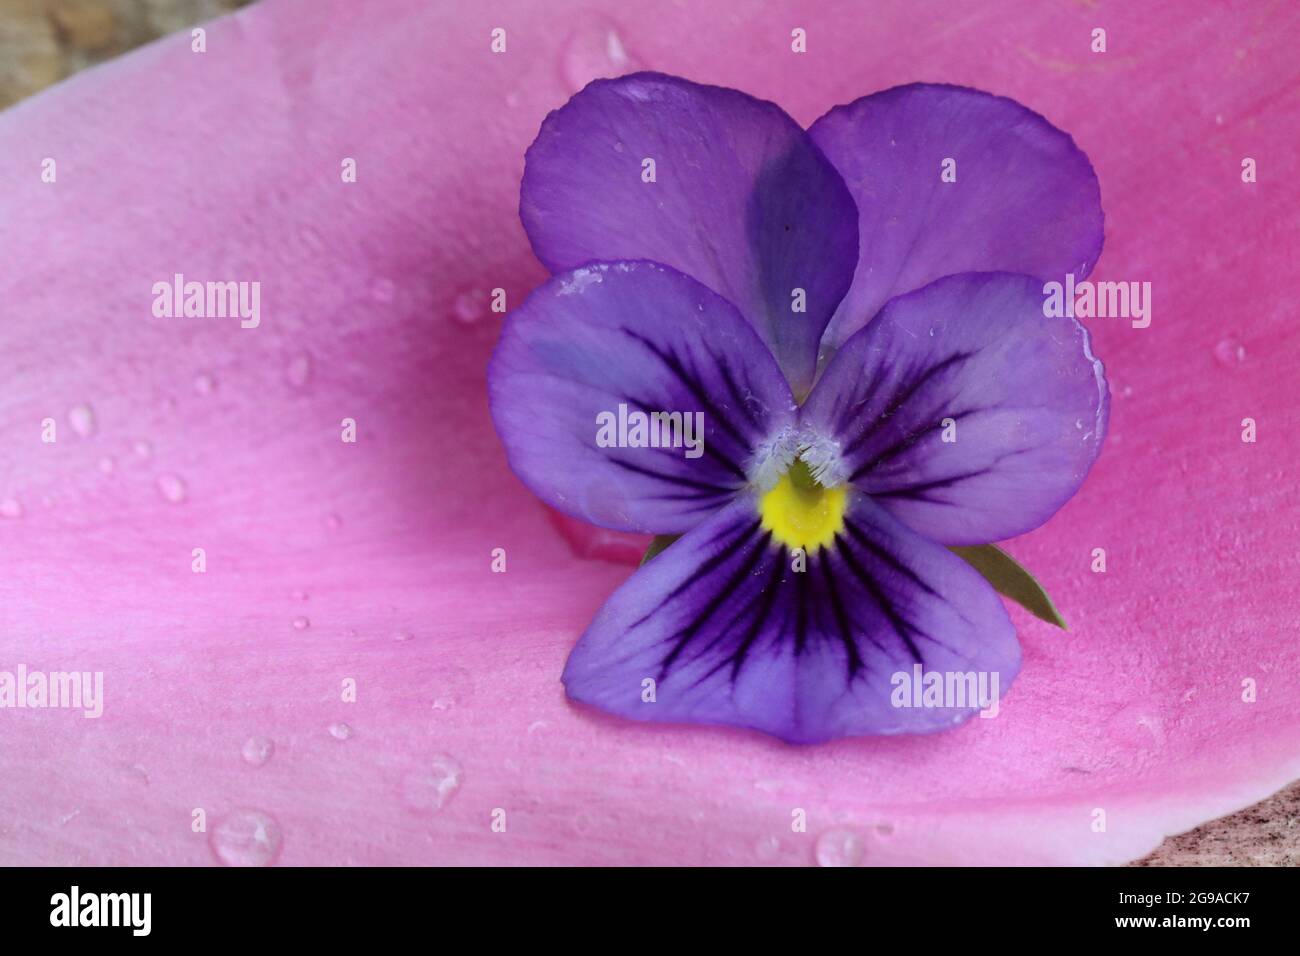 ein lila Hornveilchen liegt auf einem Pfingstrosenblatt Stock Photo